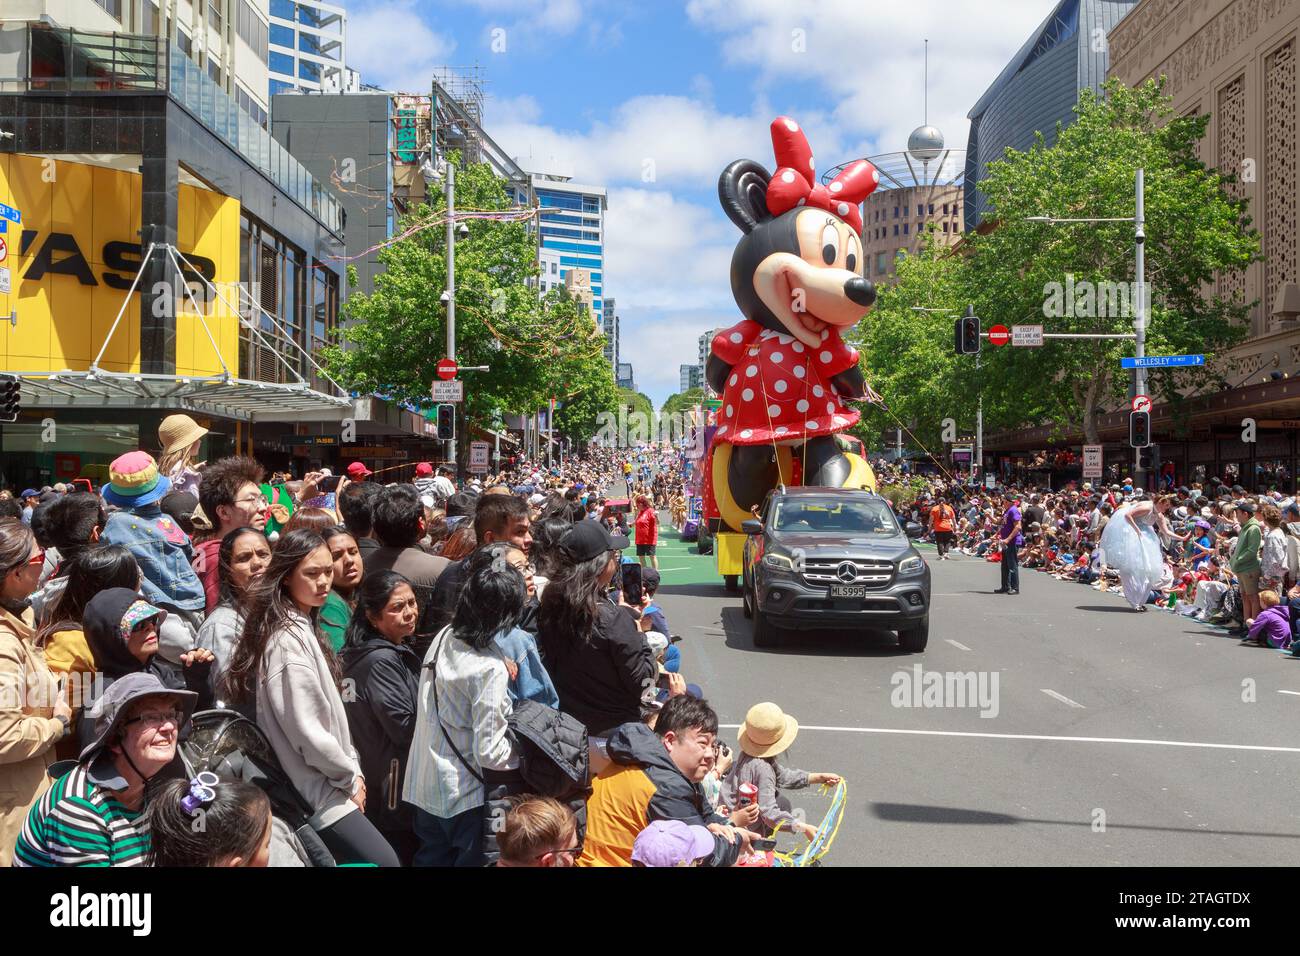 Una mongolfiera Minnie mouse osservata da una folla di spettatori alla Farmers Christmas Parade, Queen Street, Auckland, nuova Zelanda Foto Stock